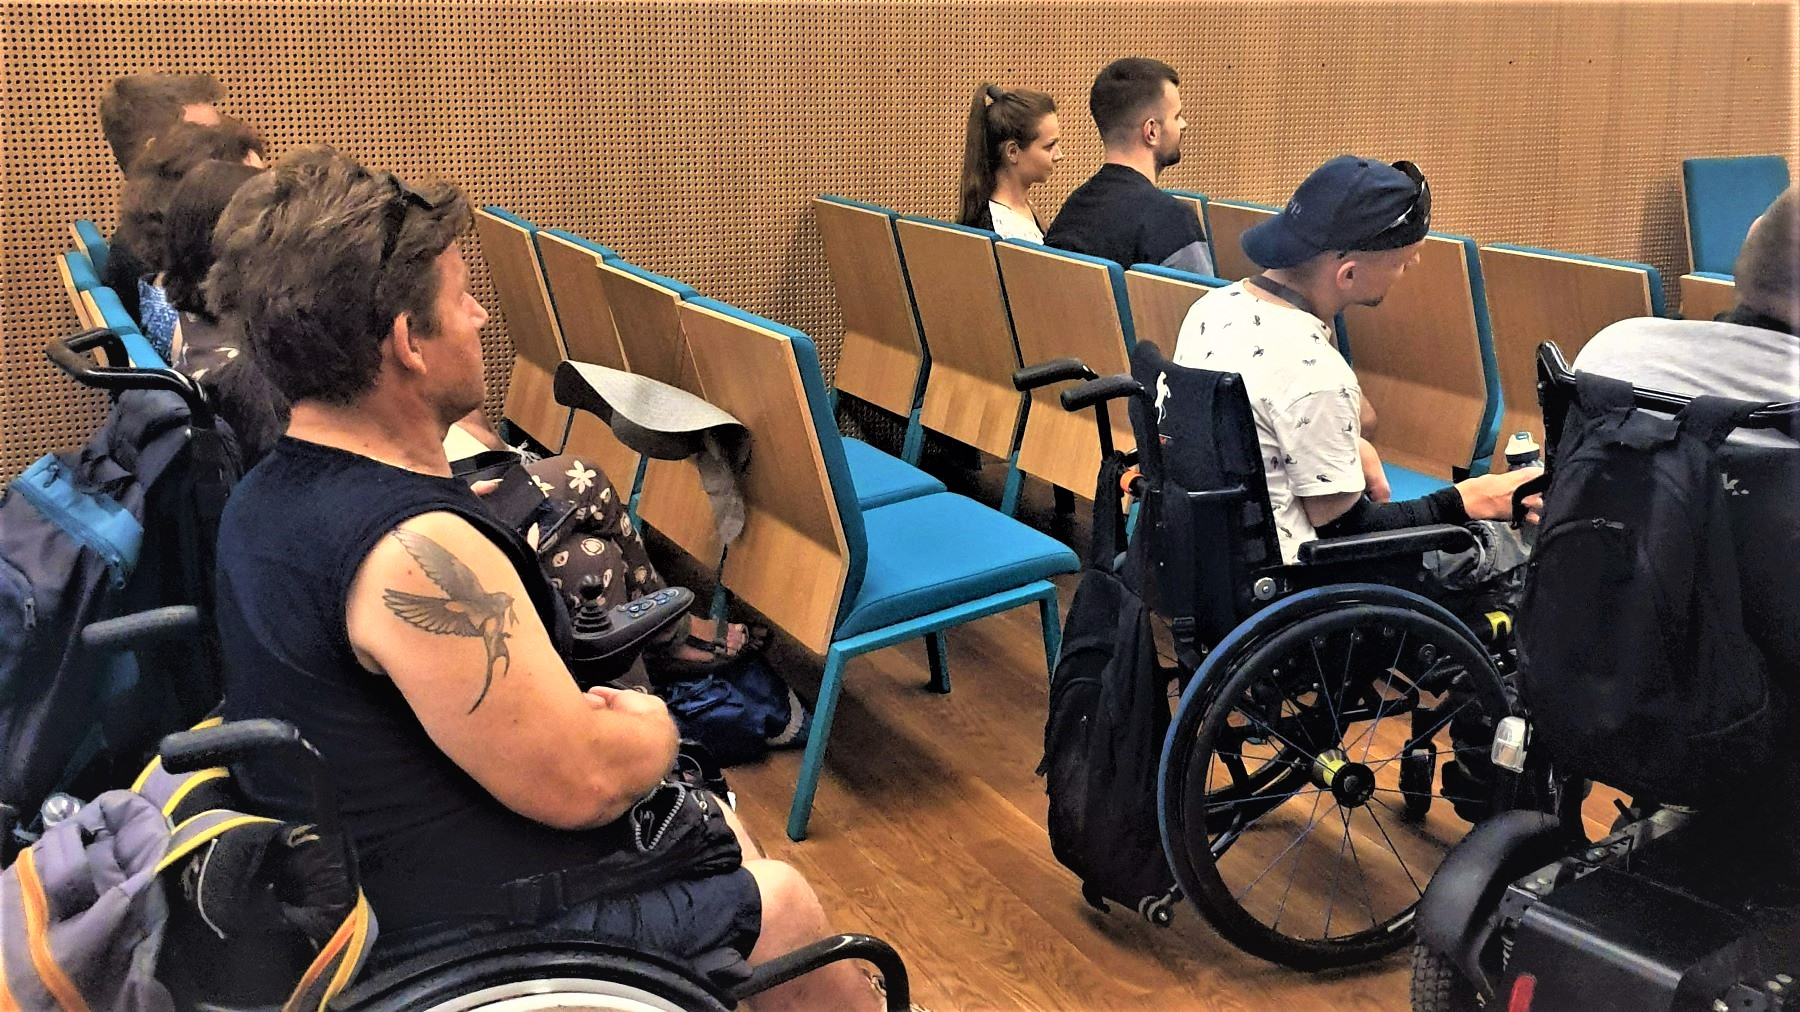 Grupa uczestników spotkania filmowego w Muzeum POLIN. Osoby z niepełnosprawnością ruchową siedzą w sali.